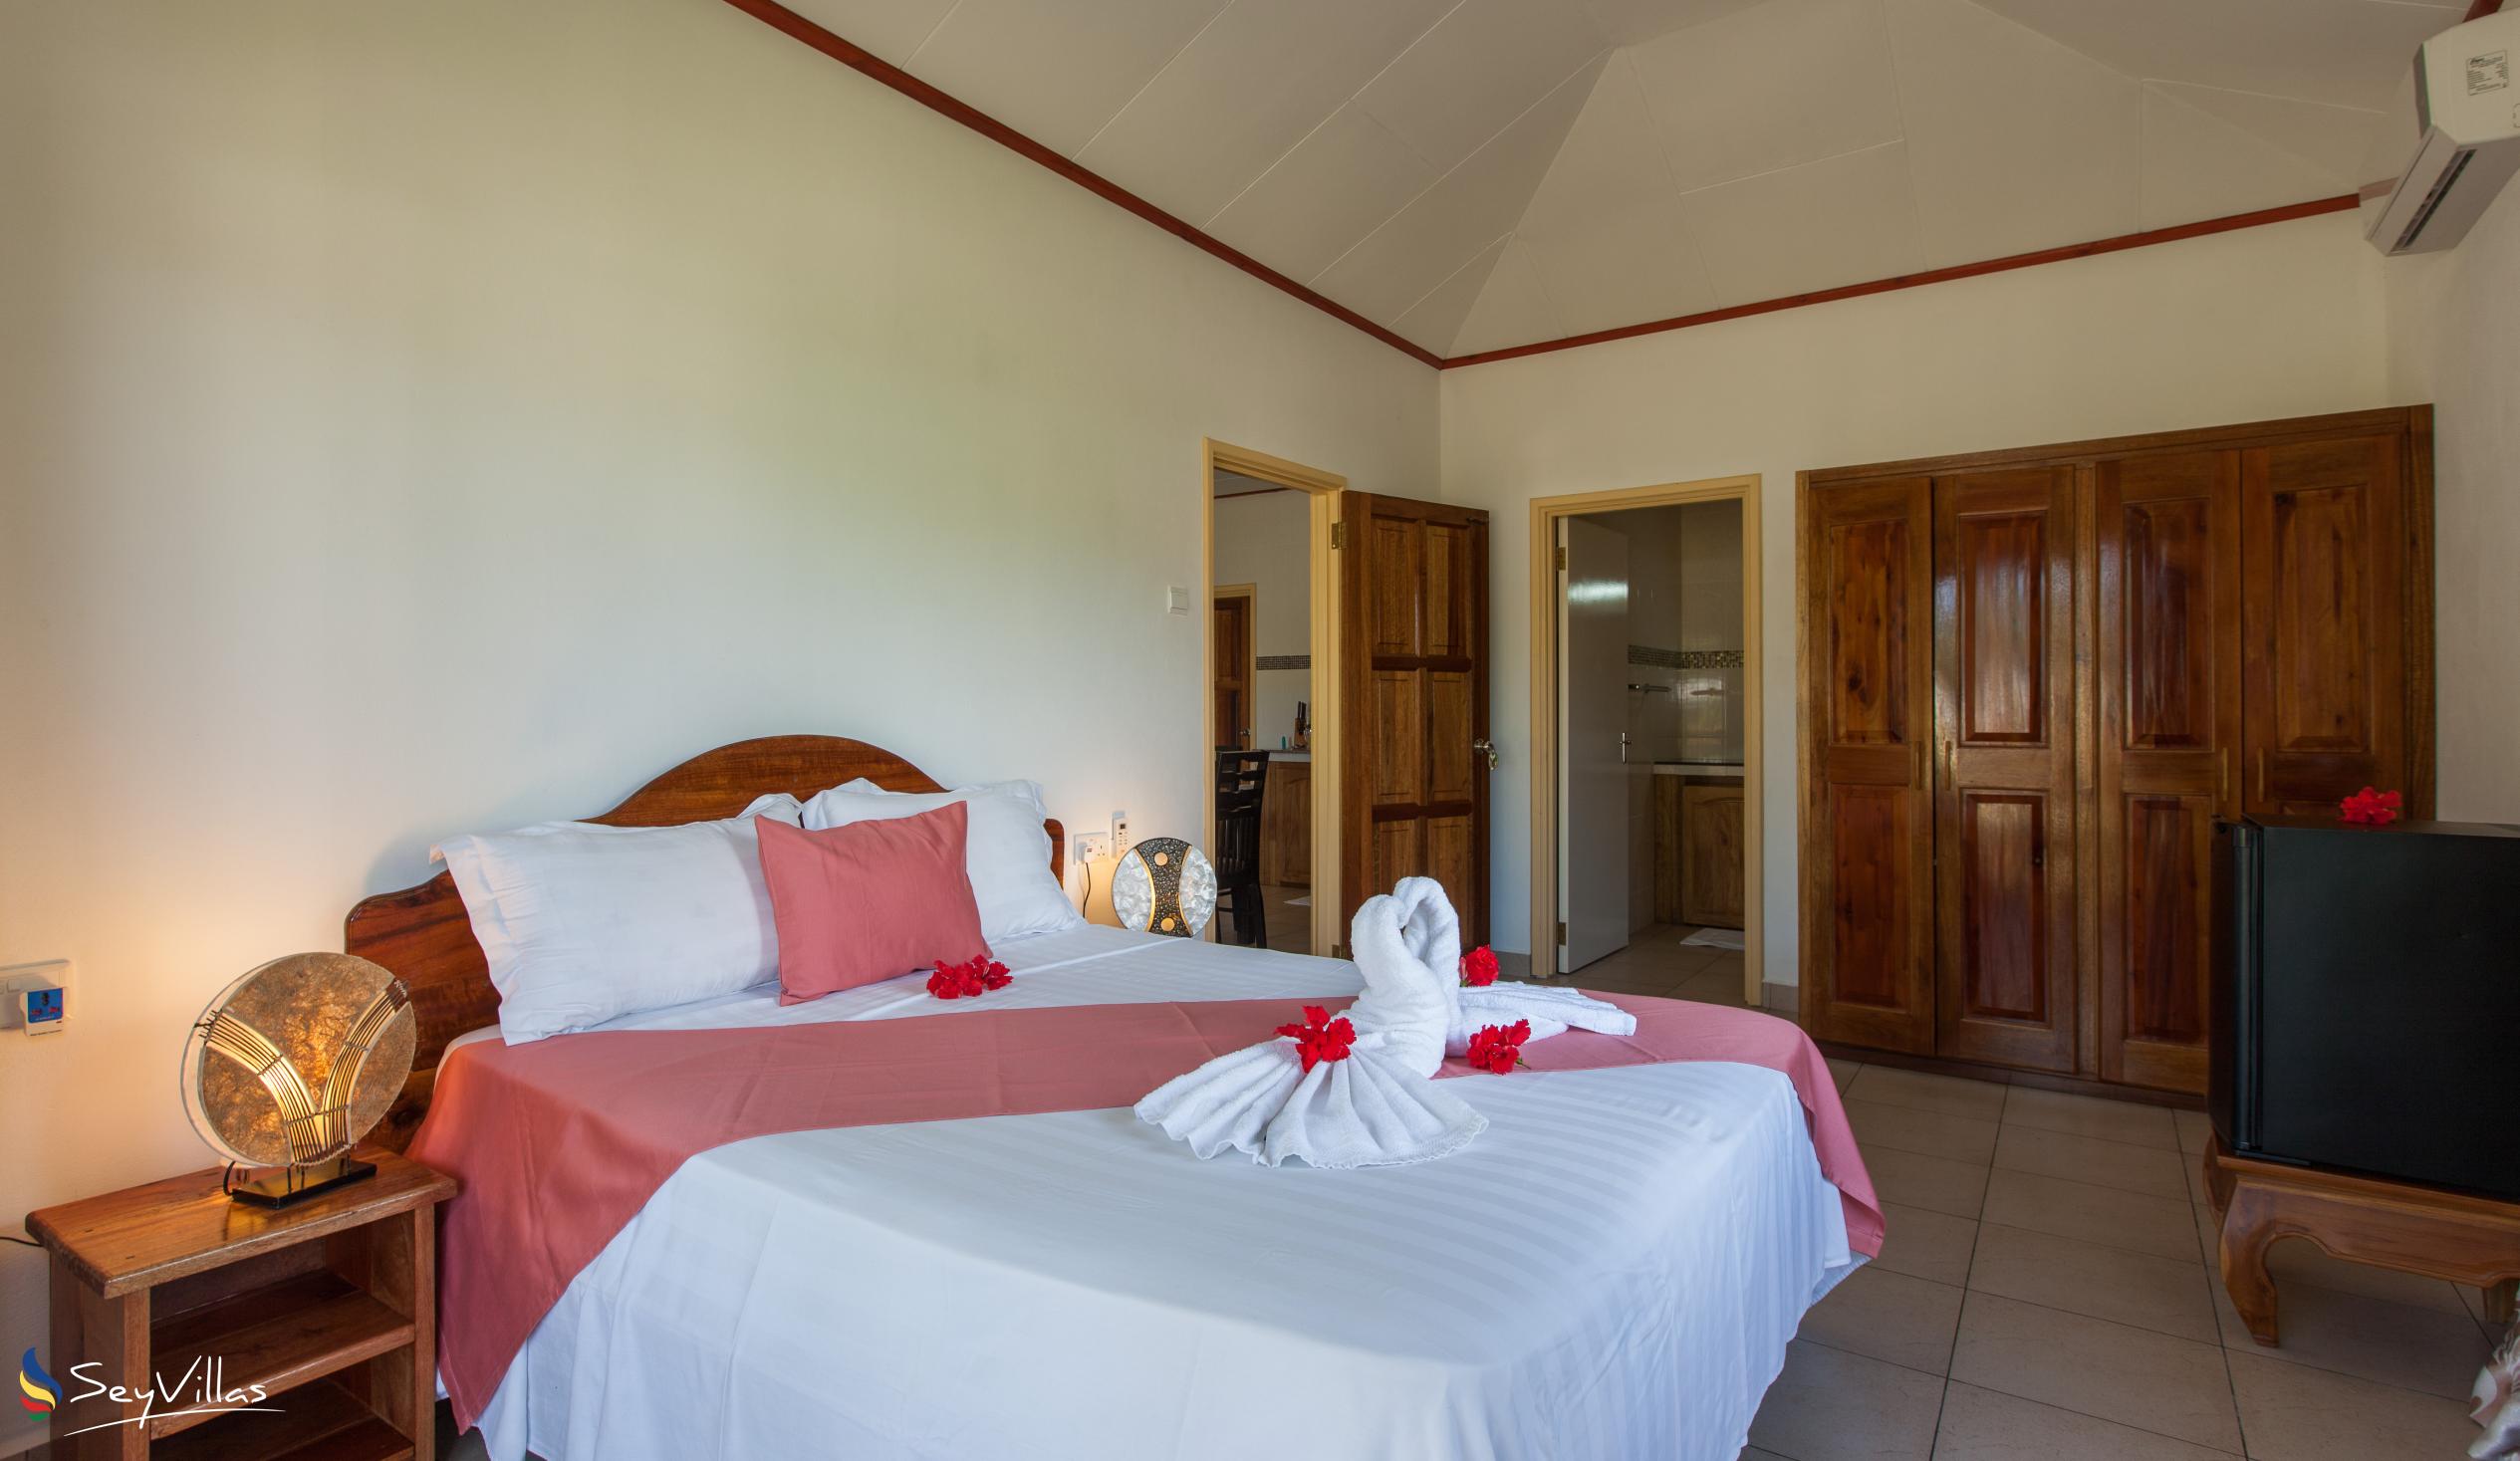 Foto 62: Hostellerie La Digue - Chalet 2 chambres - La Digue (Seychelles)